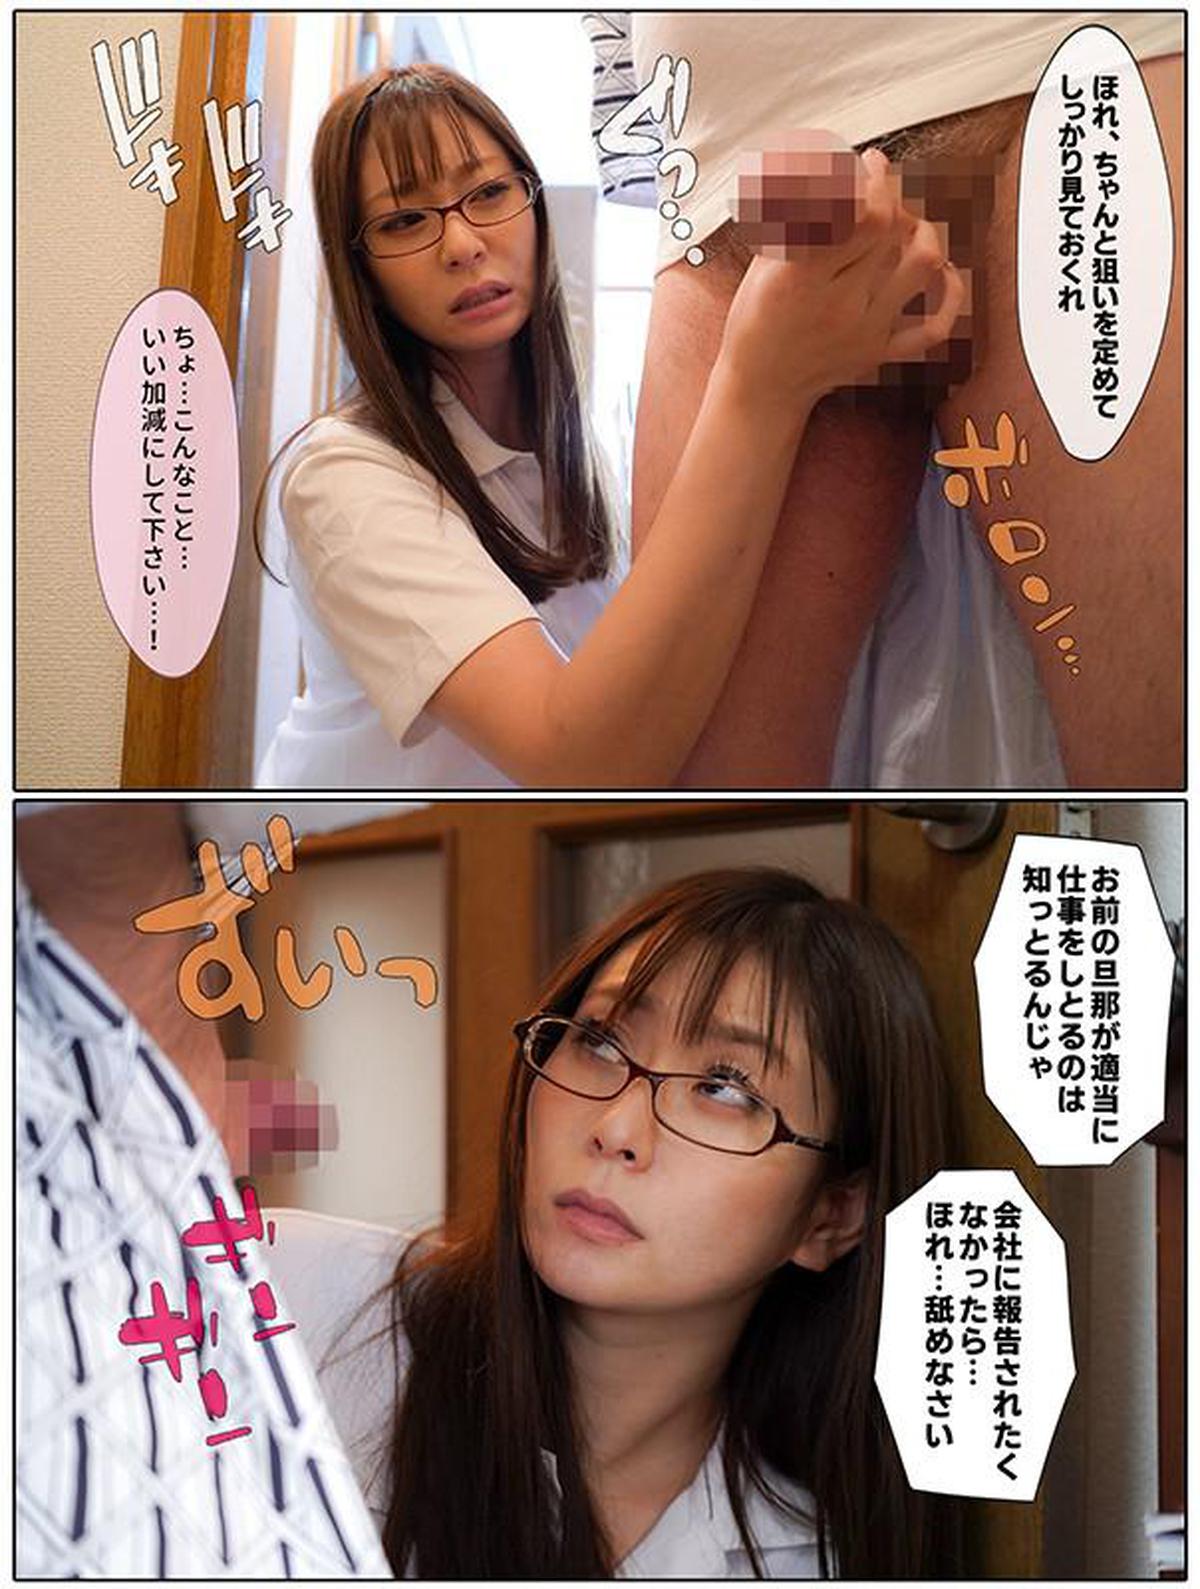 MRSS-087 बहुत गंभीर पत्नी लंबी अवधि की देखभाल नौकरी के लिए उपयुक्त नहीं है Aoi Yurika